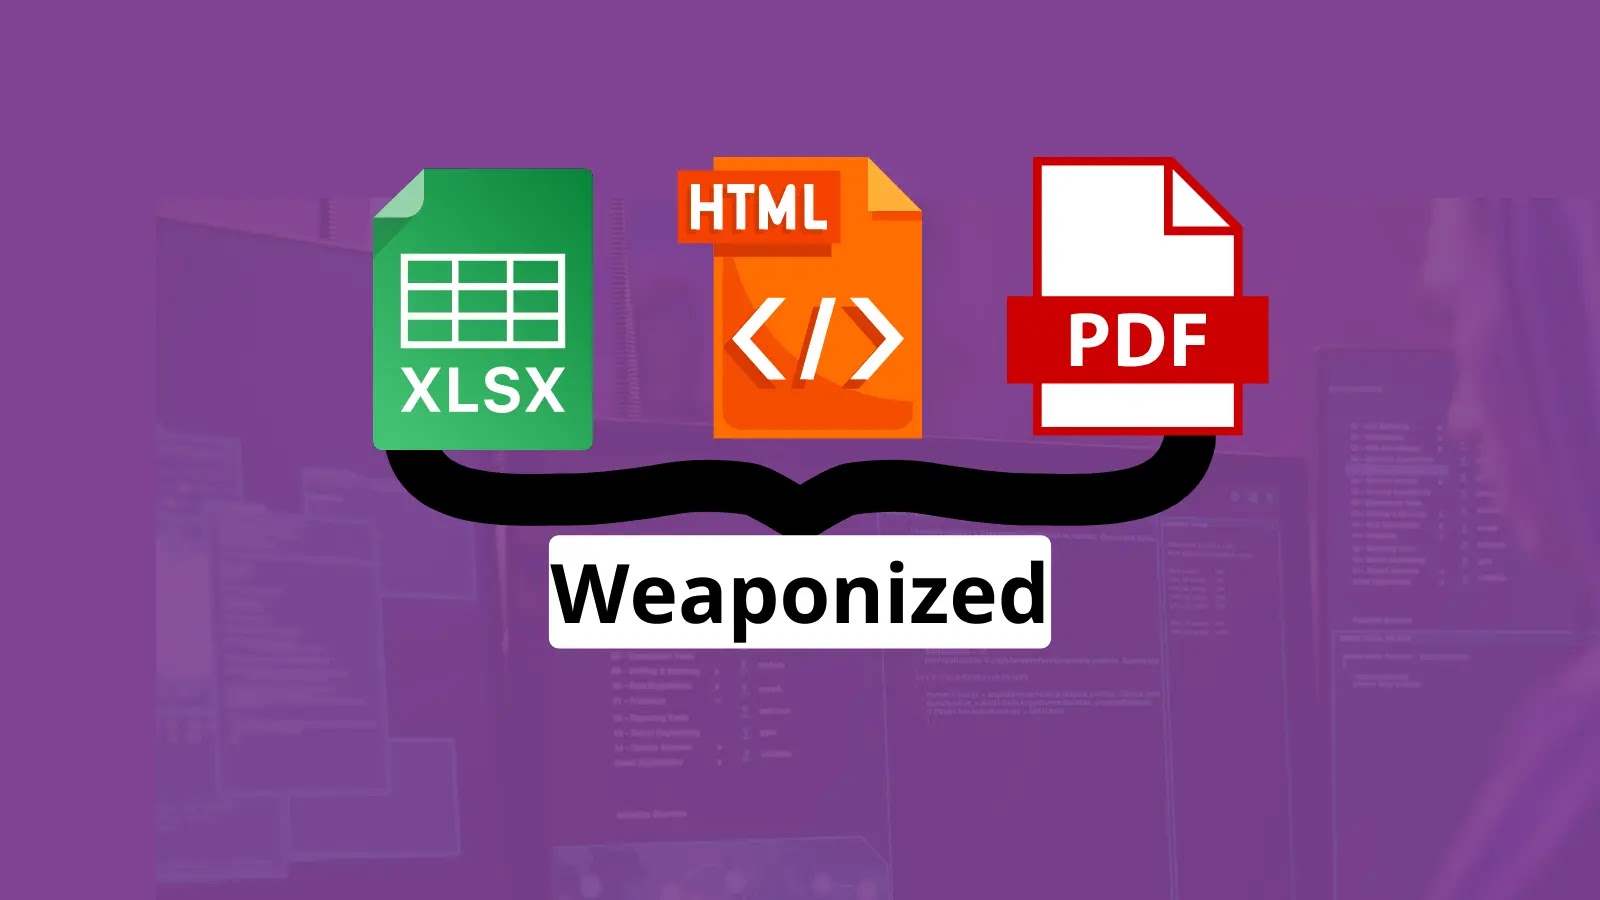 Darkgate Kötü Amaçlı Yazılım, Windows Makinelerine Saldırmak İçin XLSX, HTML ve PDF'yi Silahlandırıyor